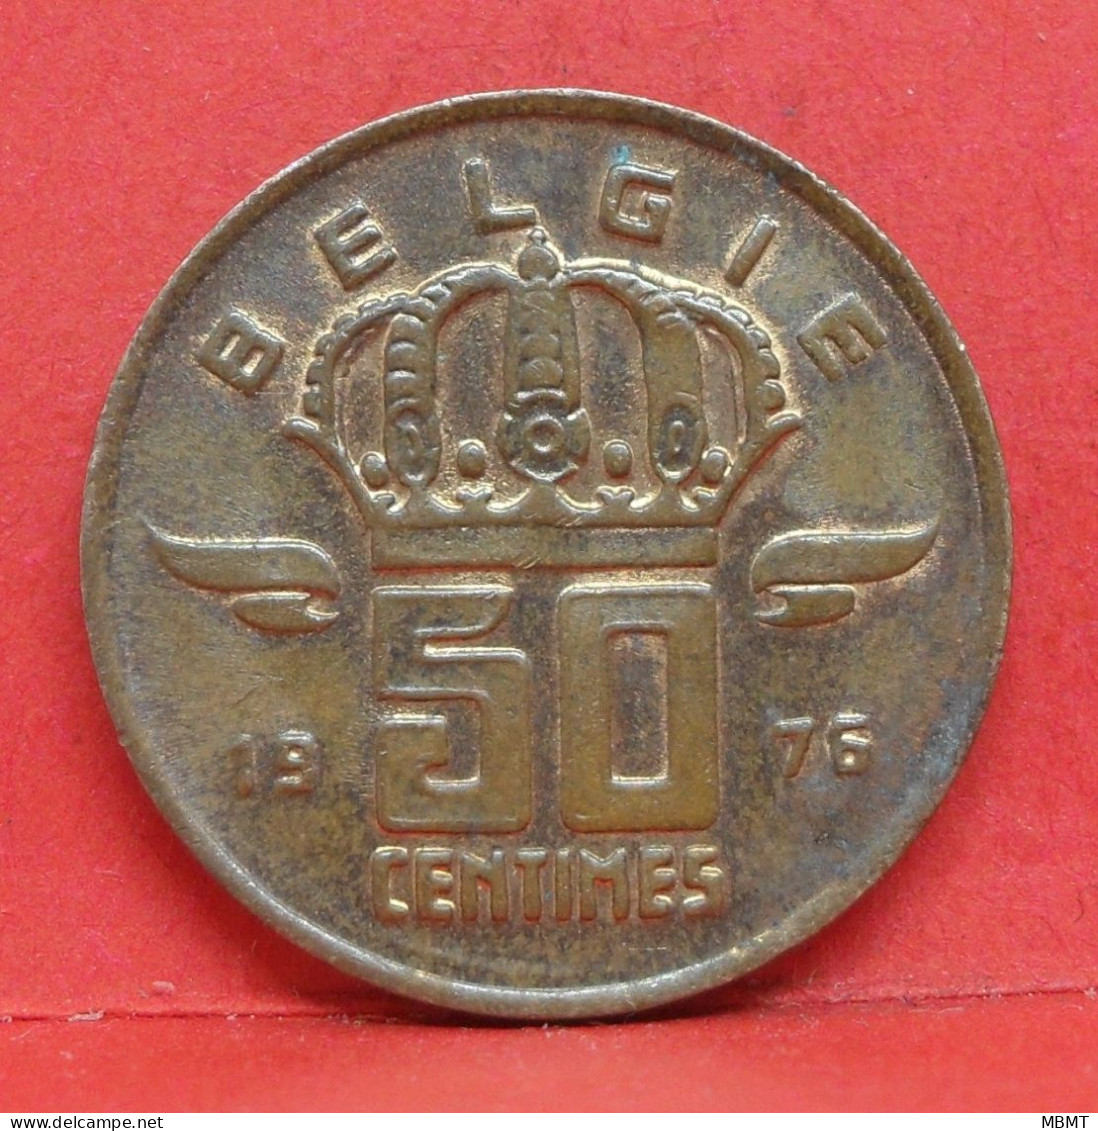 50 Centimes 1975 - SUP - Pièce Monnaie Belgie - Article N°1893 - 50 Centimes